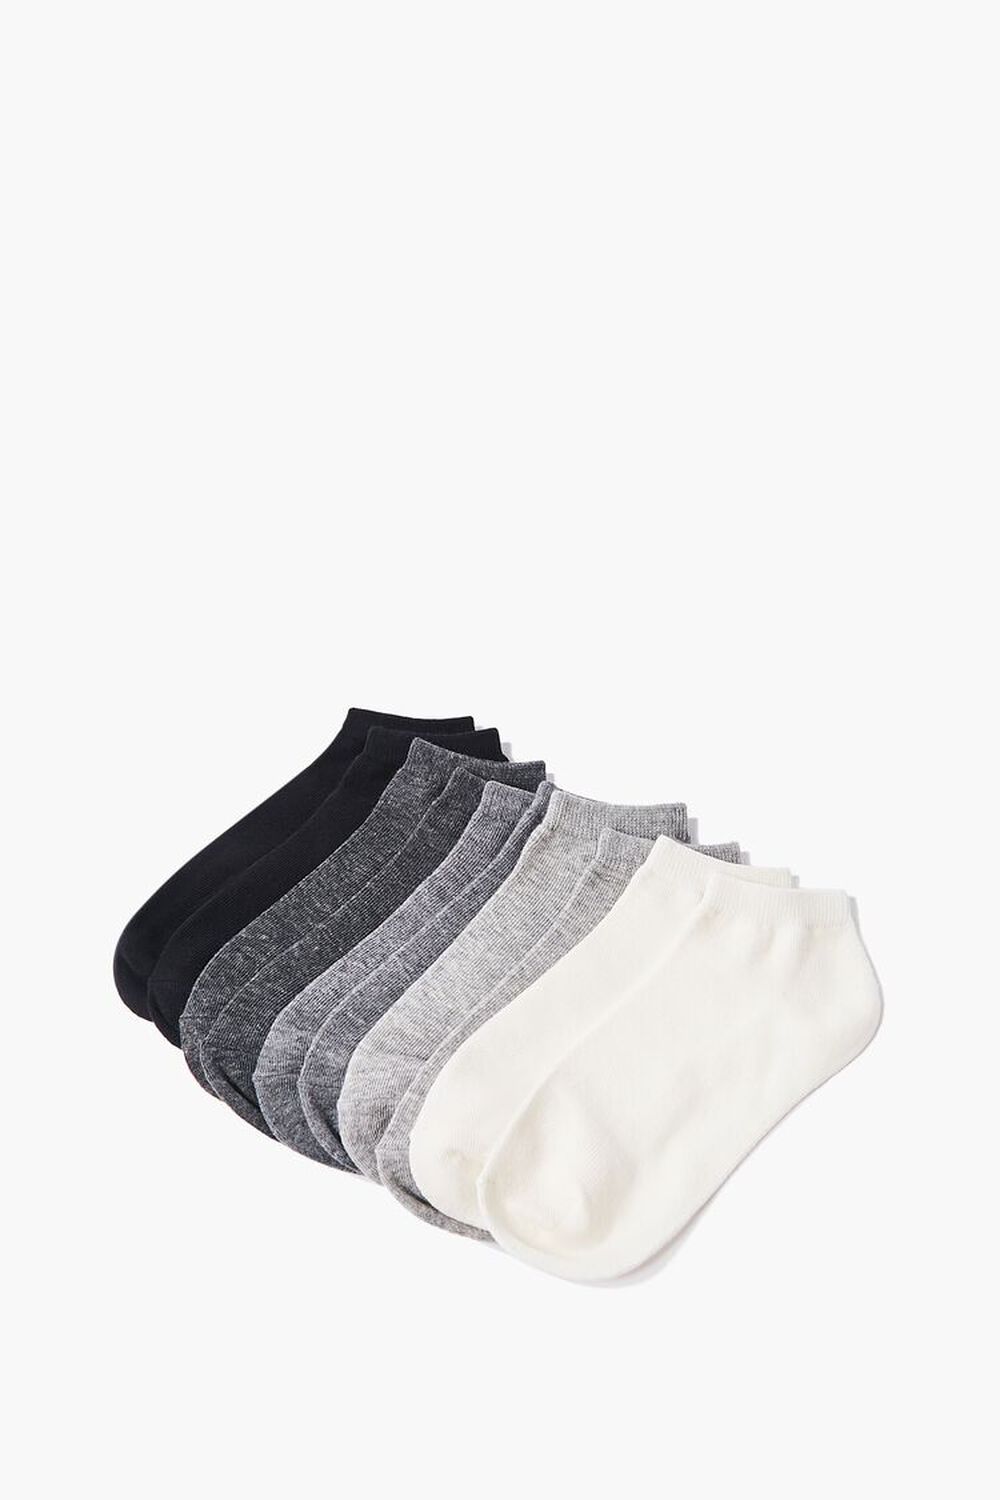 BLACK/GREY Knit Ankle Socks - 5 Pack, image 1